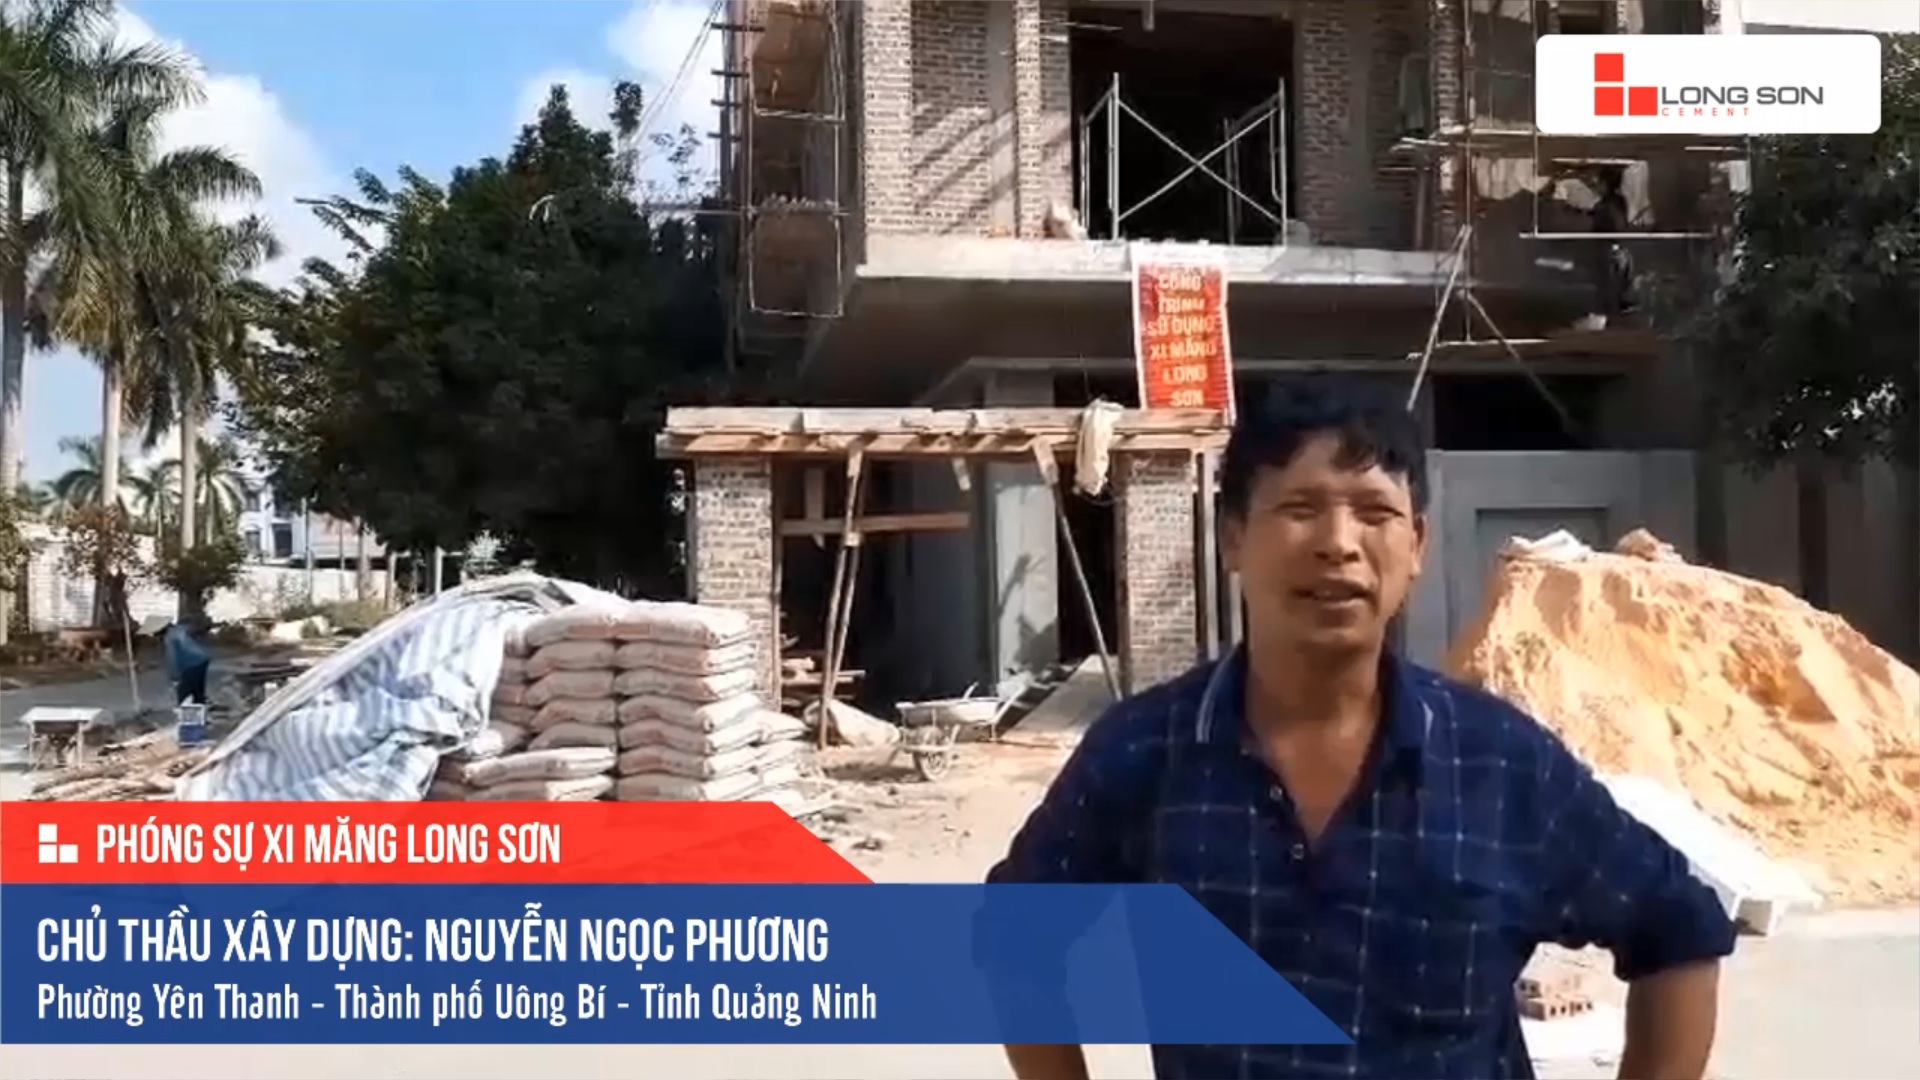 Phóng sự công trình sử dụng Xi măng Long Sơn tại Quảng Ninh 18.12.2019